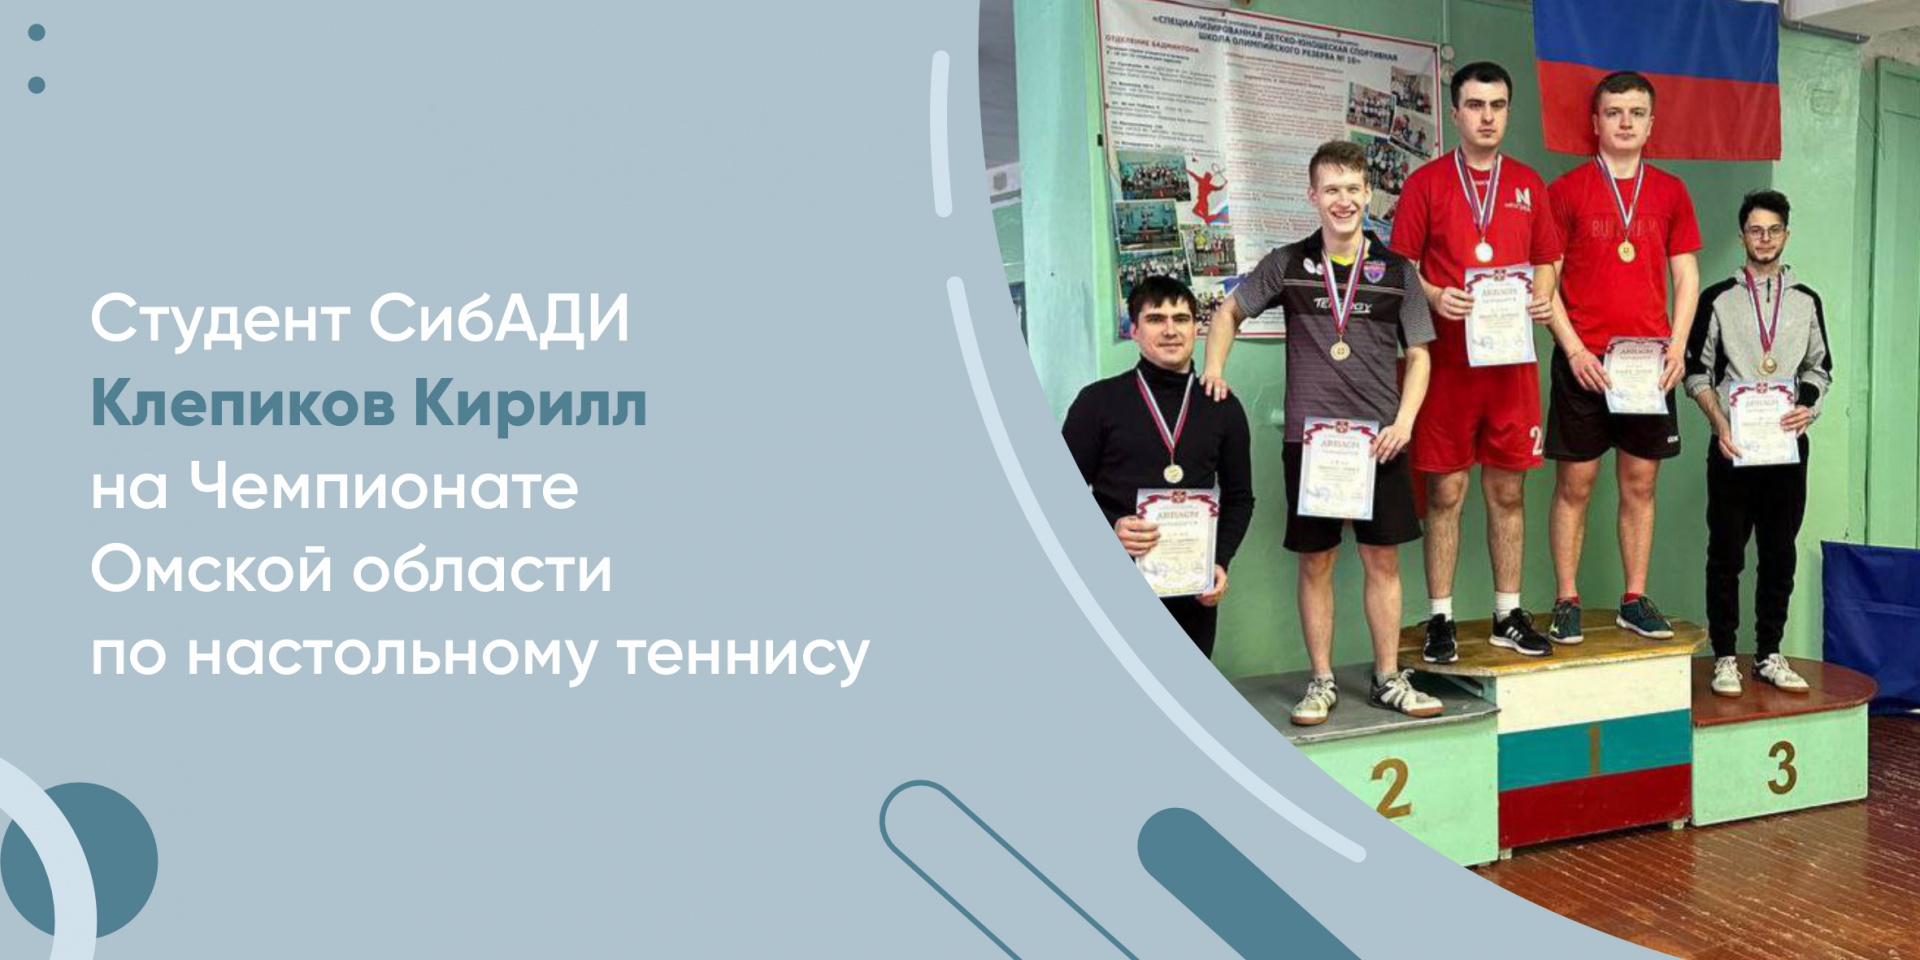 Студент СибАДИ Клепиков Кирилл собрал медали всех достоинств Чемпионата Омской области по настольному теннису